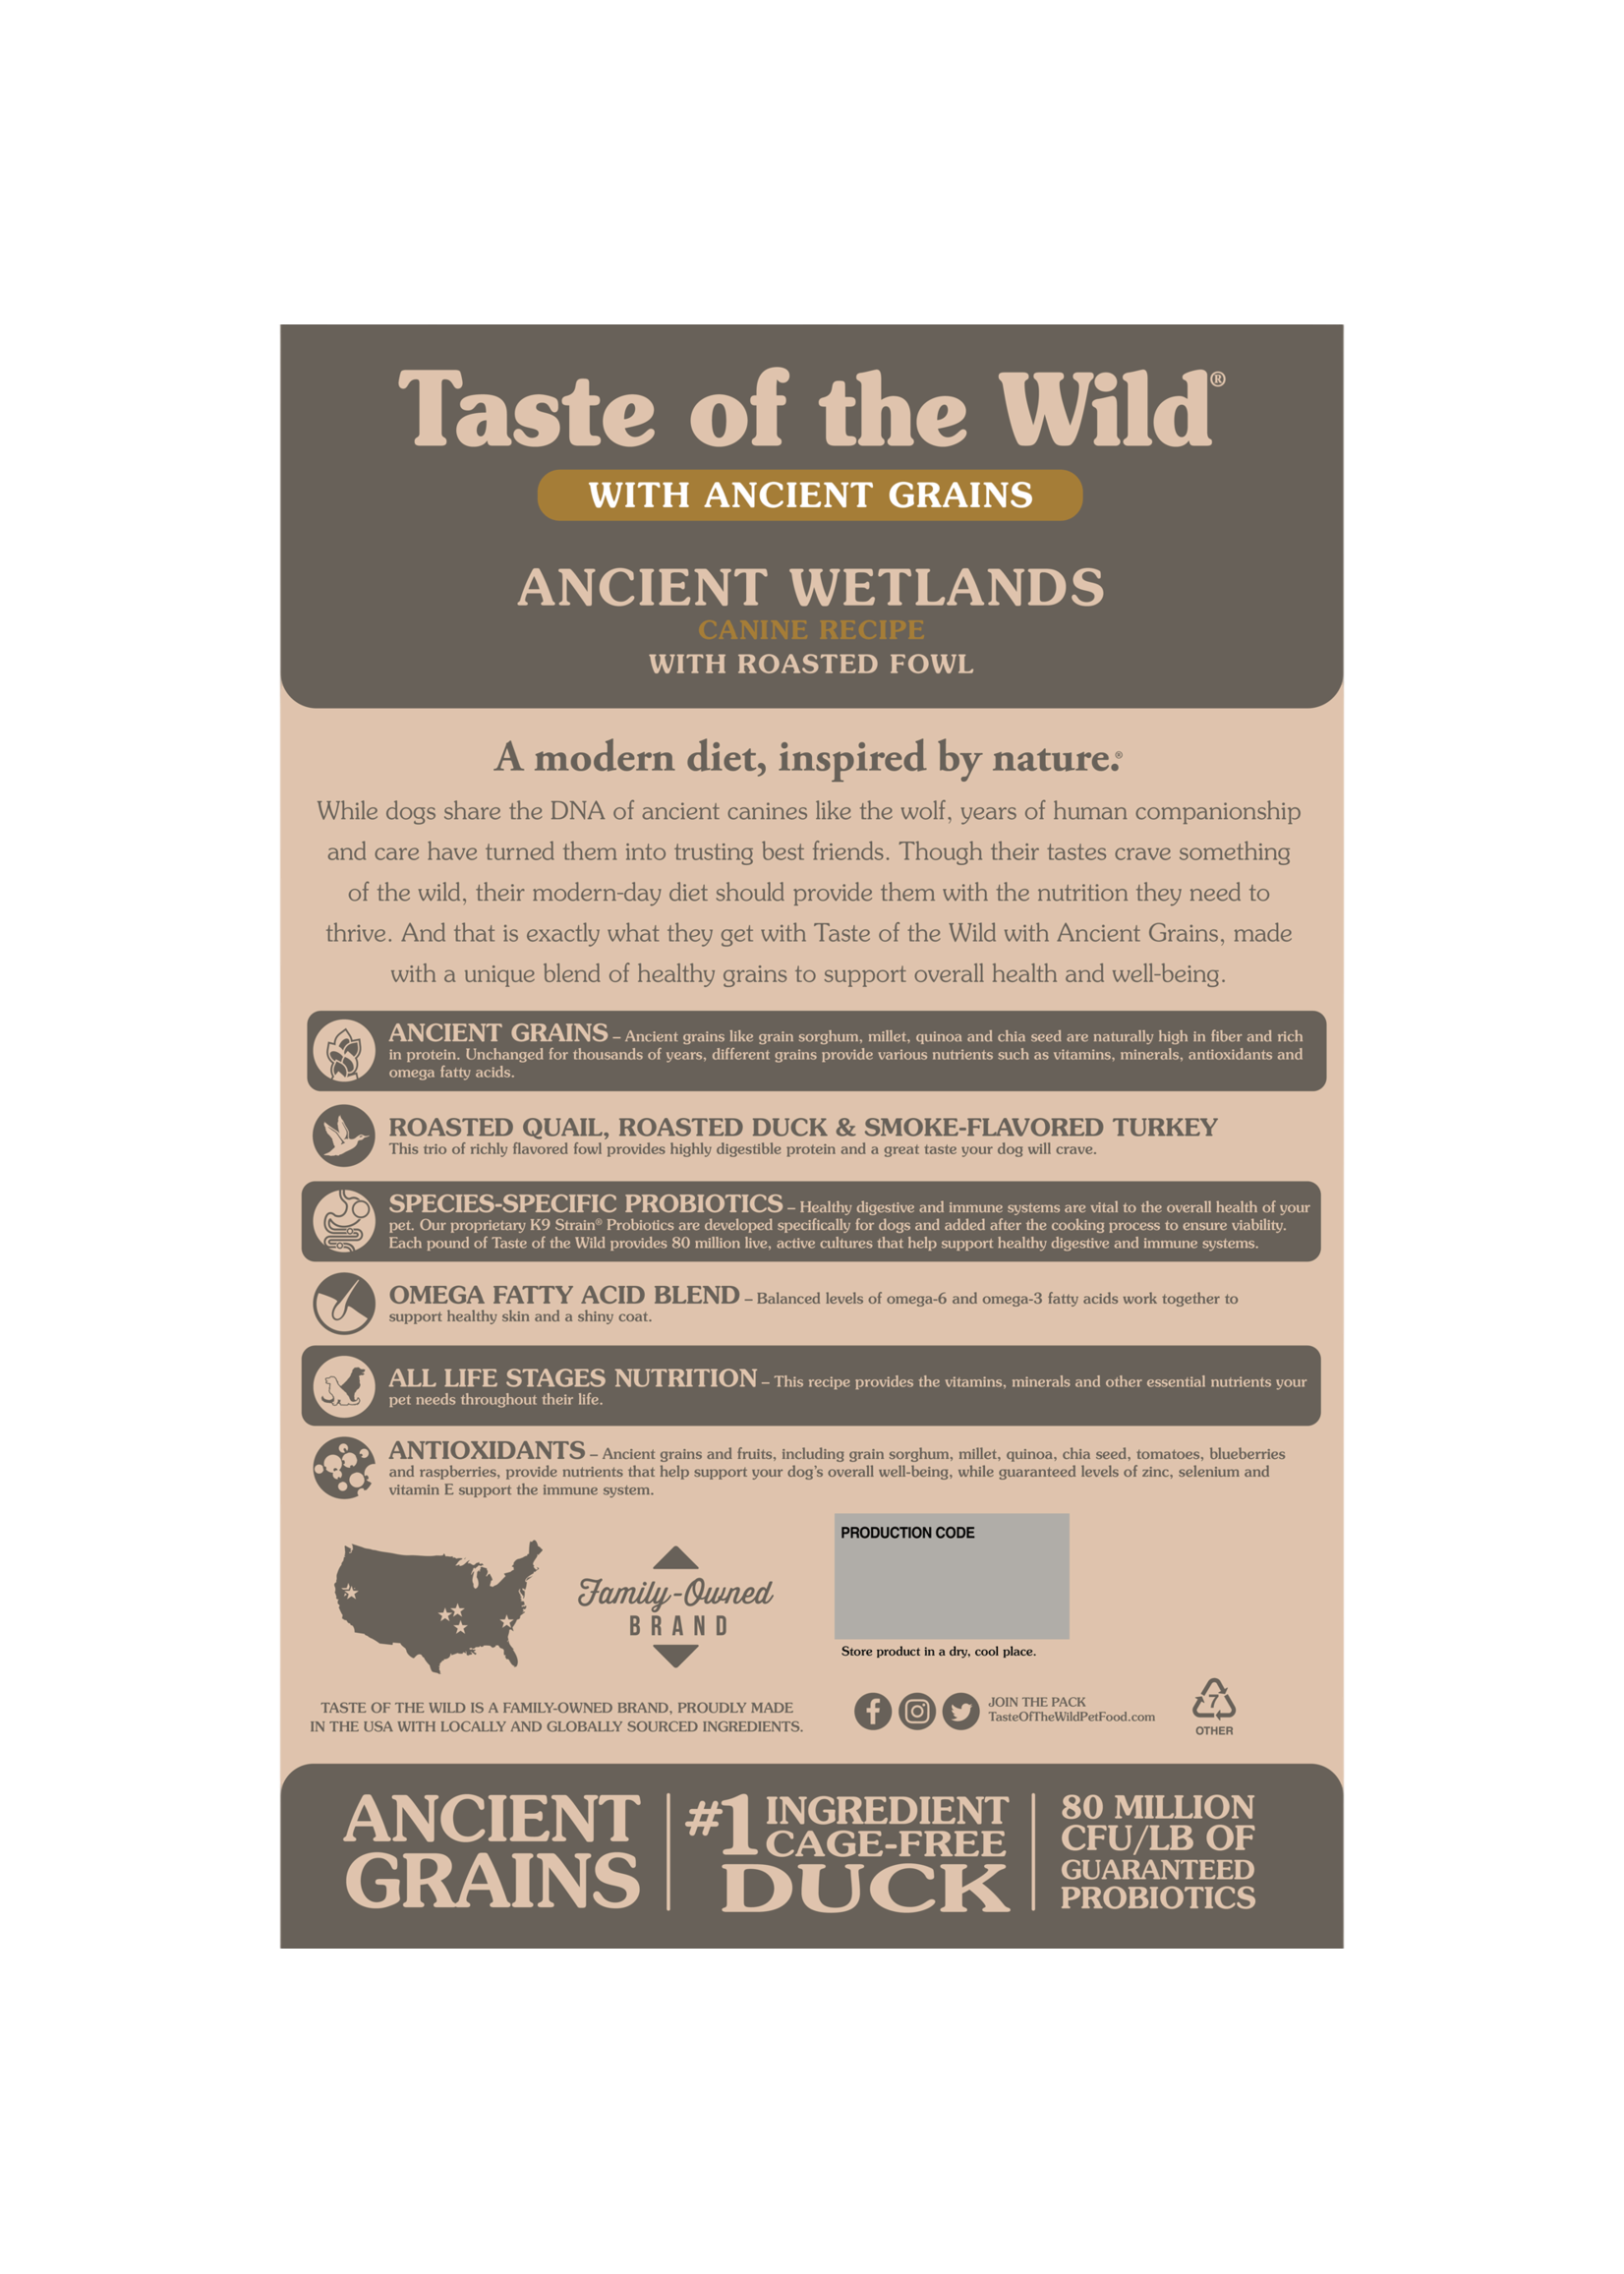 Taste of the Wild Taste of the Wild, Dog, Ancient Wetlands